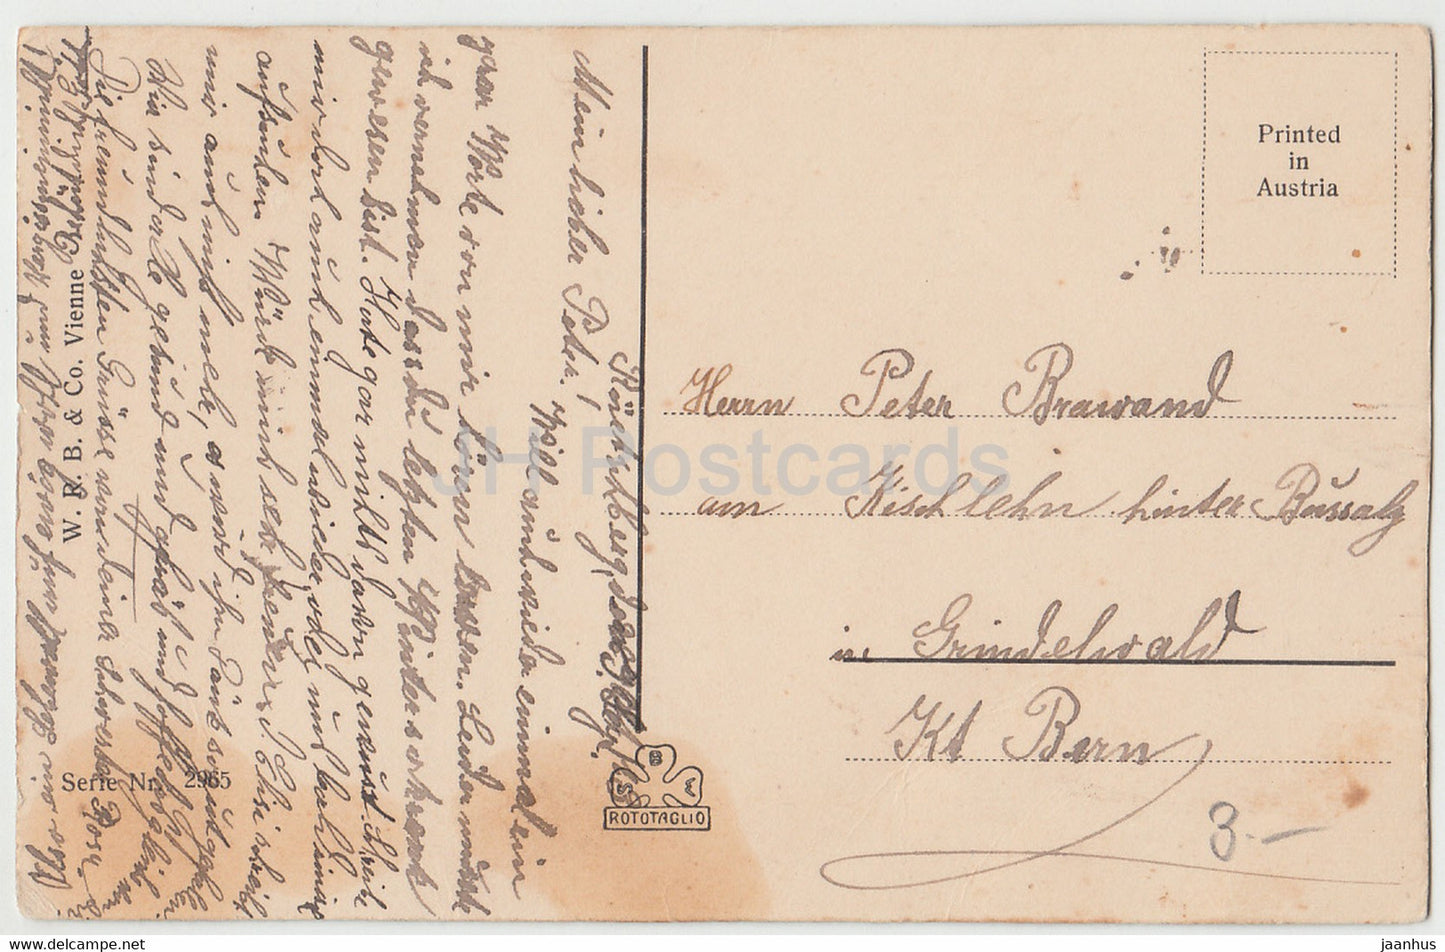 femme - lettre écrite - Série Nr 2965 - carte postale ancienne - Autriche - occasion